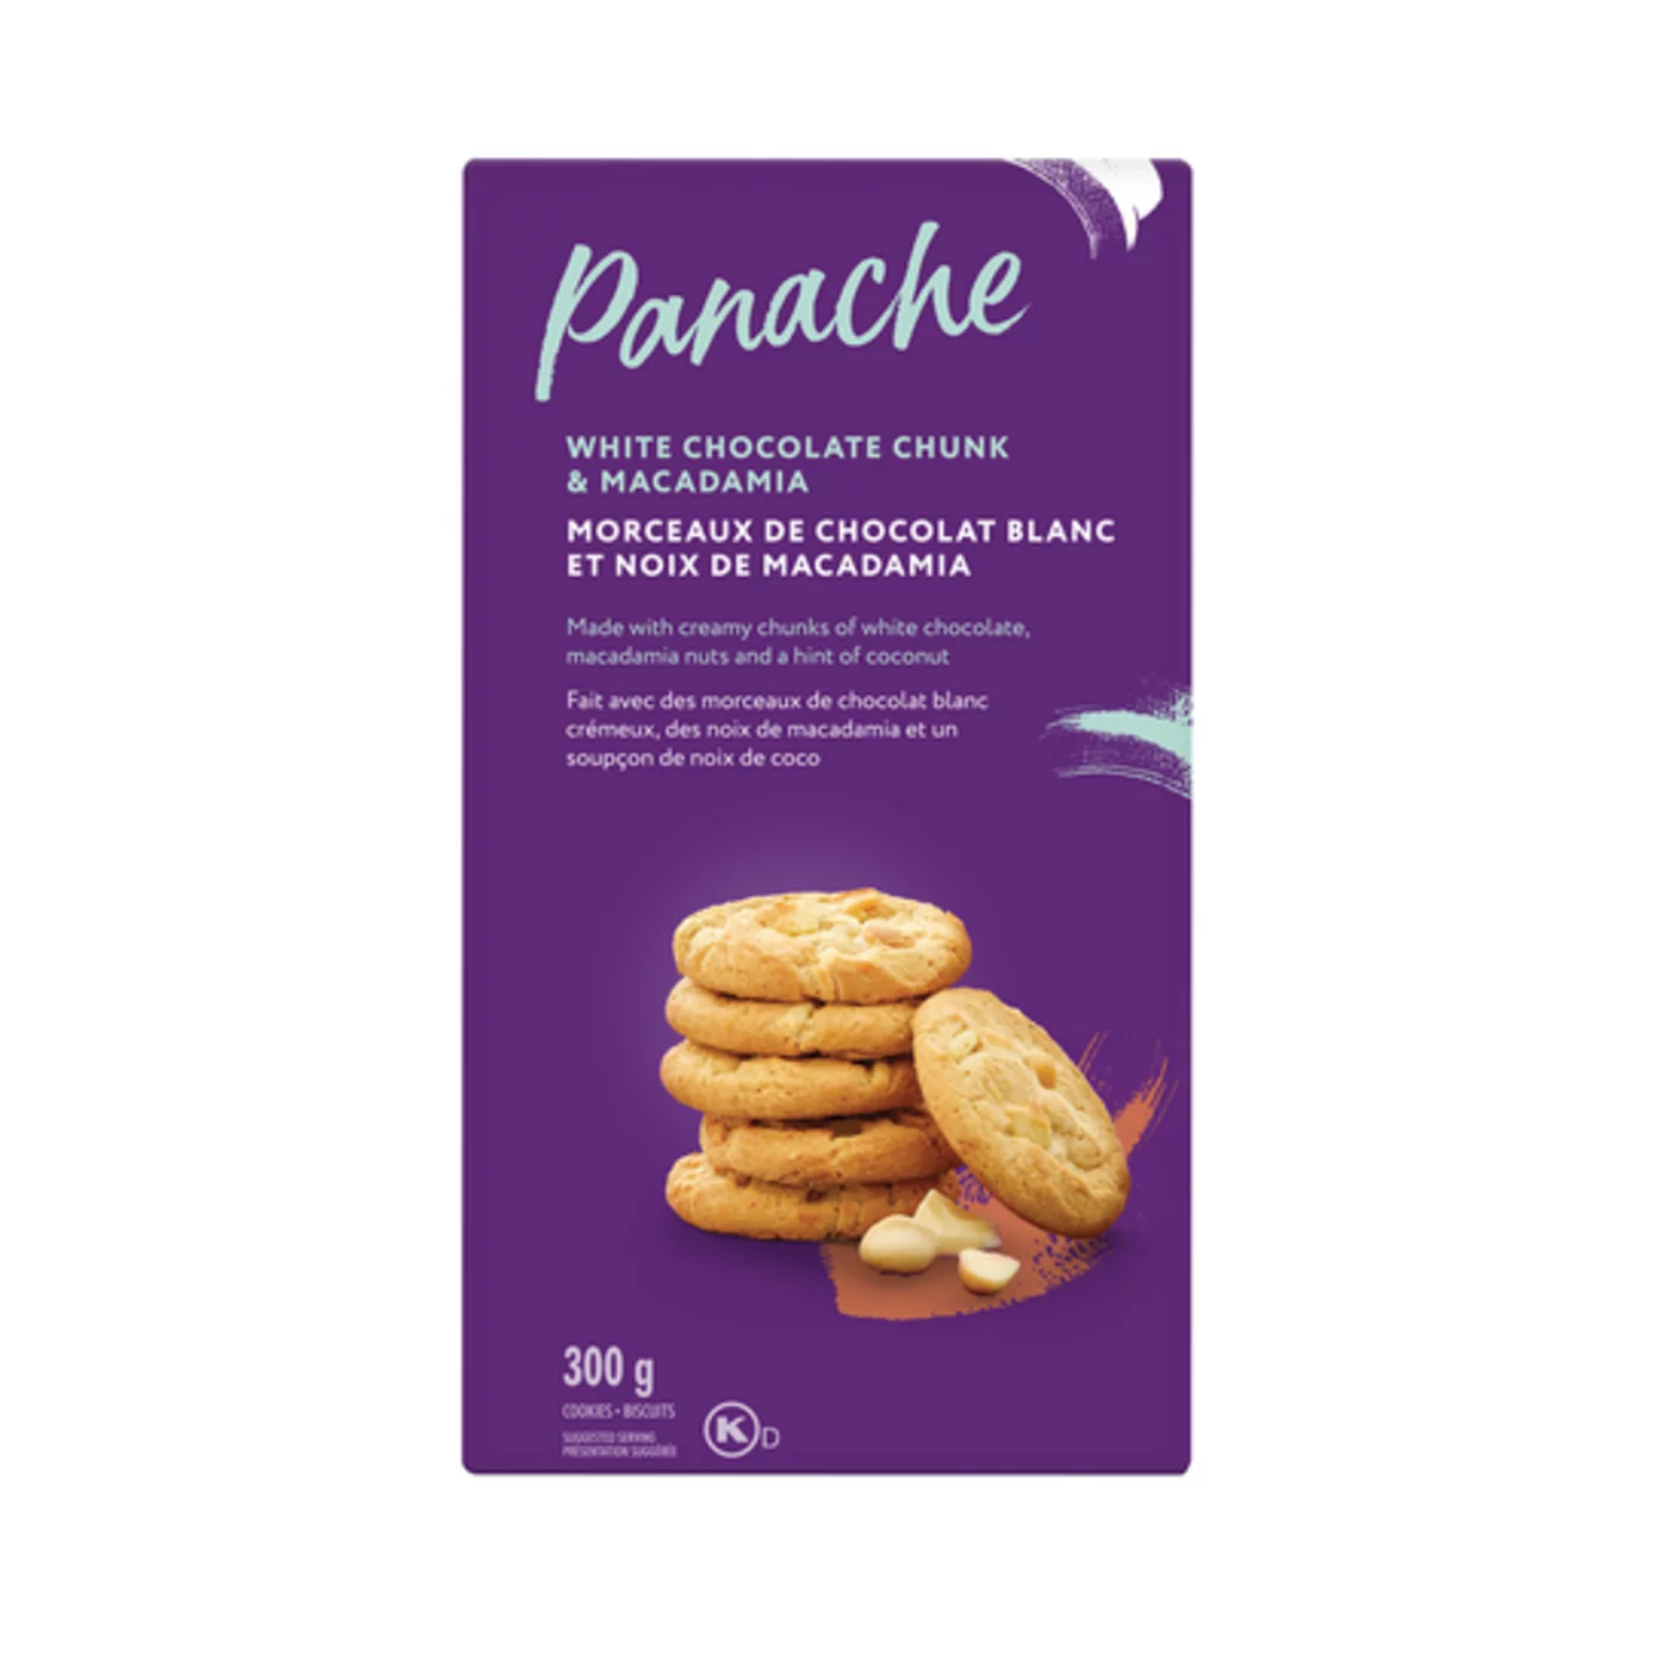 Panache White Chocolate Chunk & Macadamia Cookie 300g